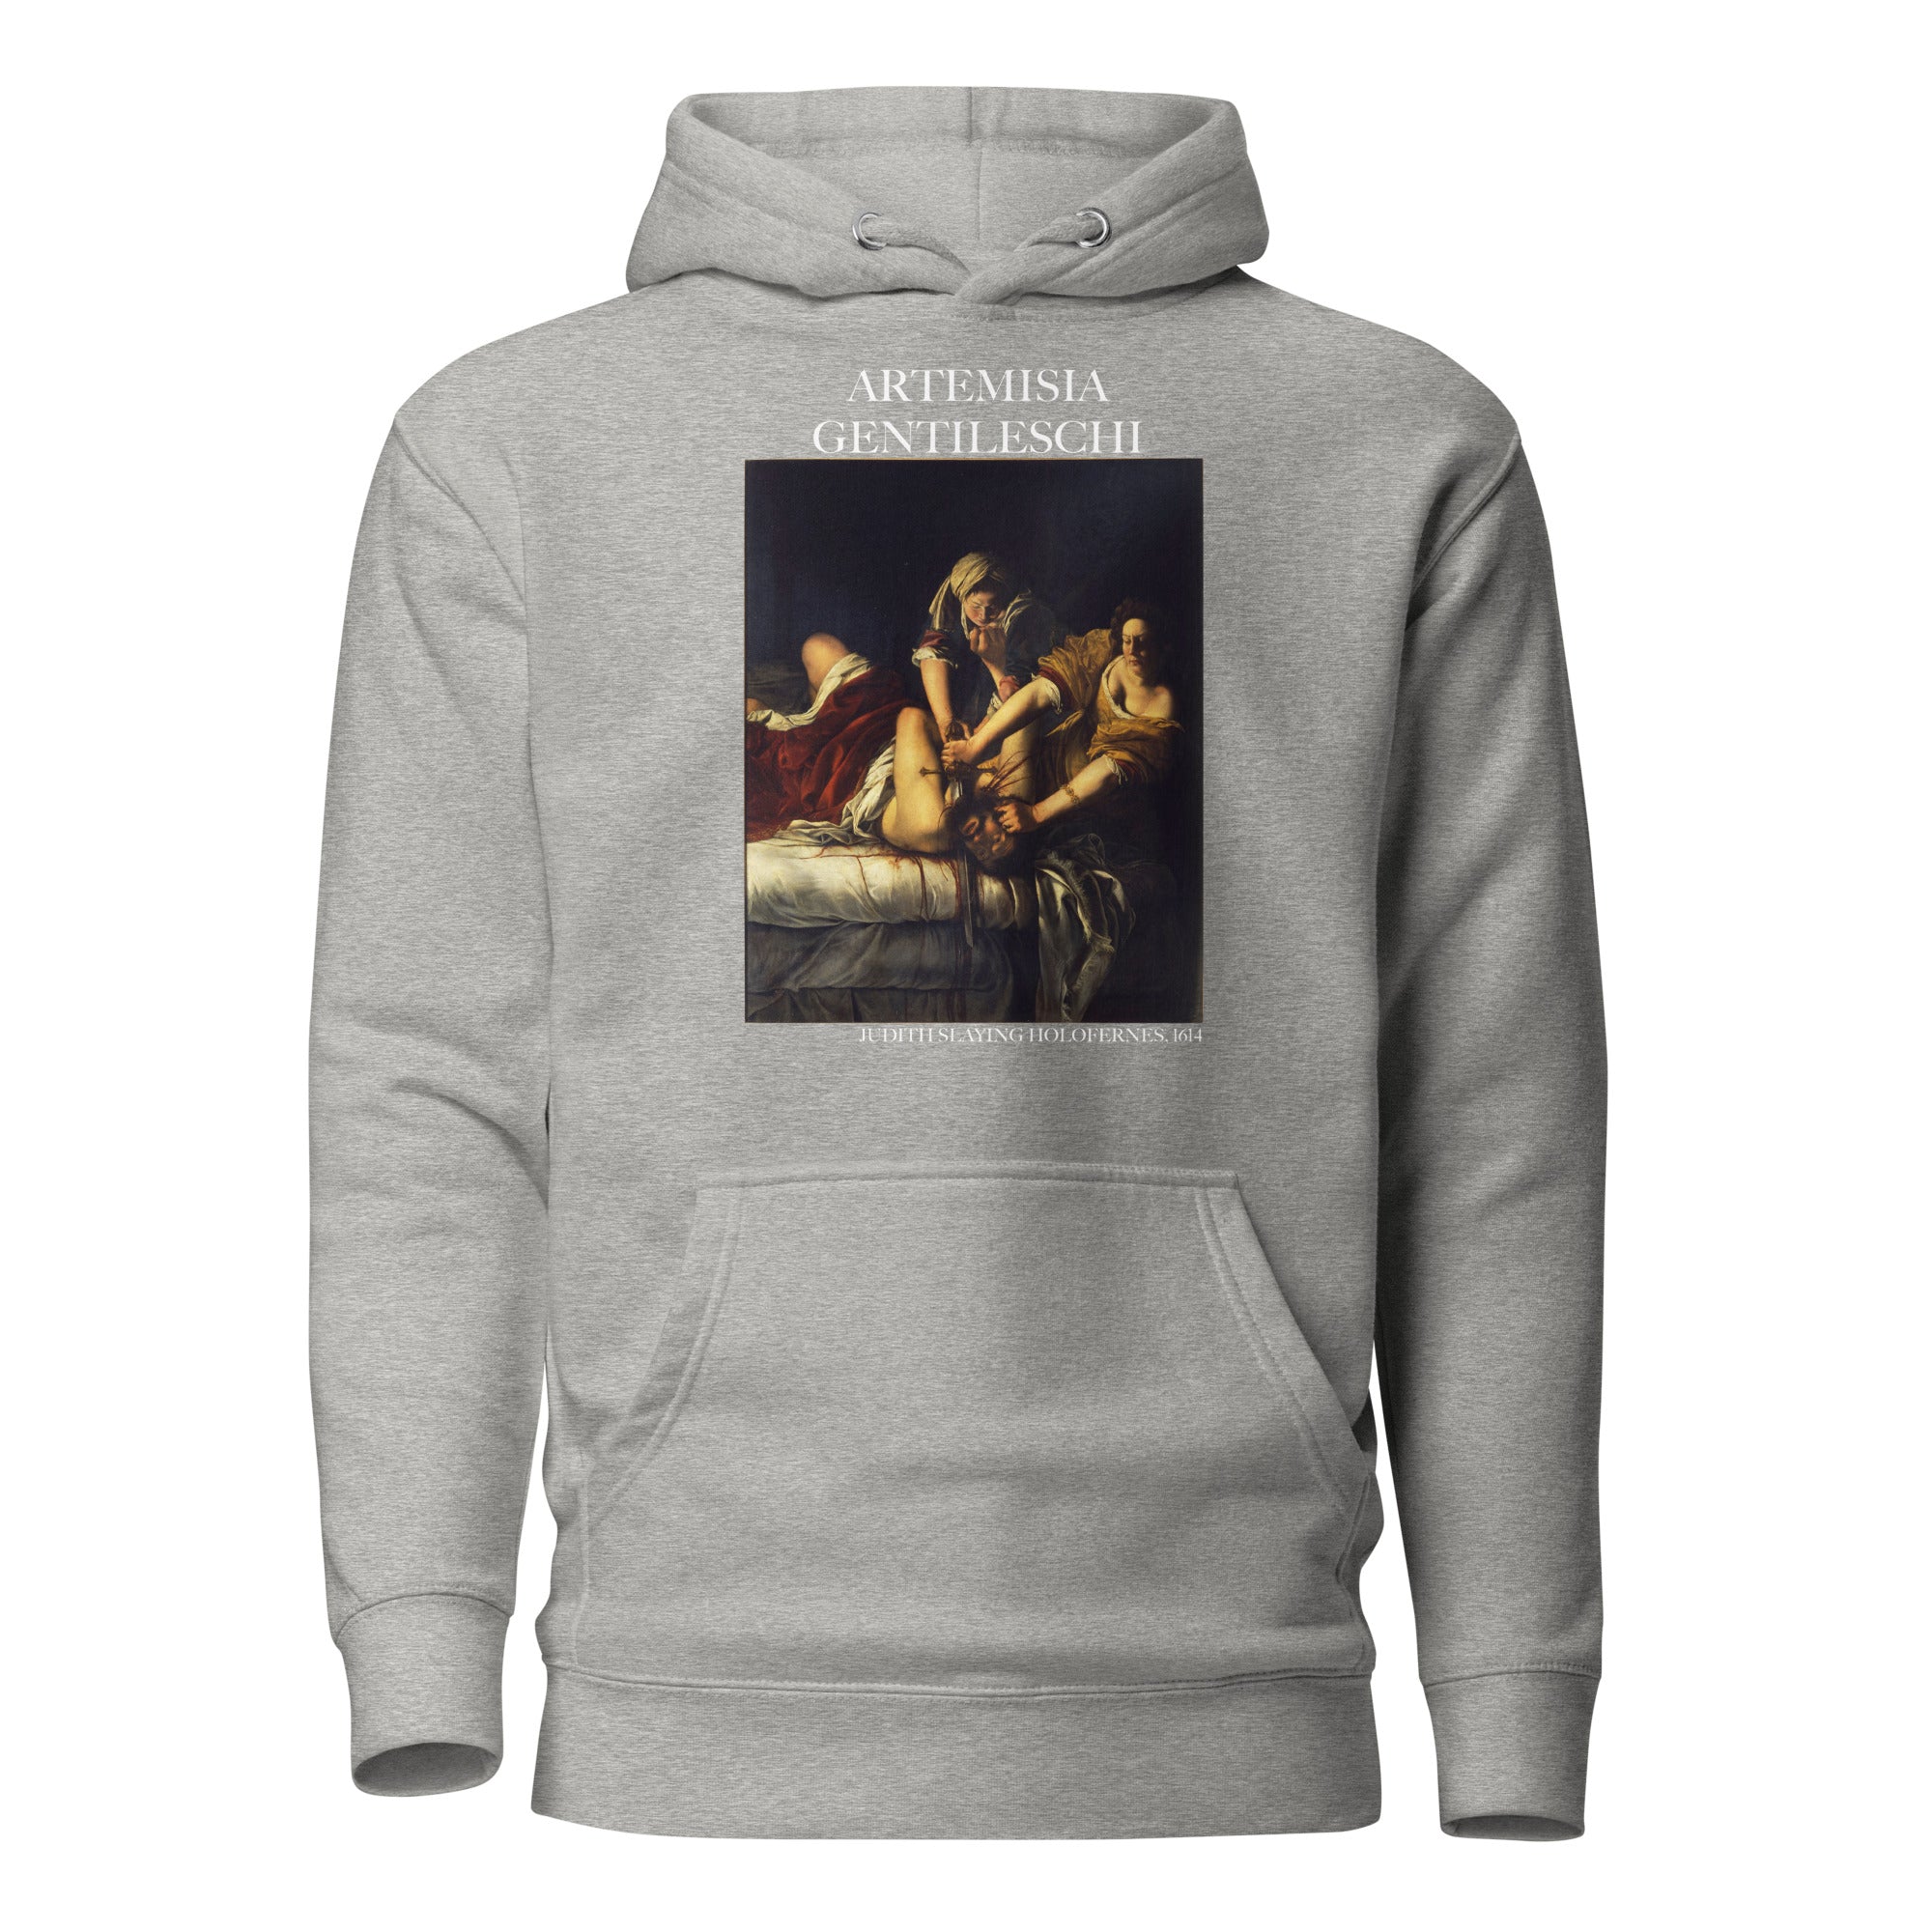 Kapuzenpullover mit berühmtem Gemälde „Judith erschlägt Holofernes“ von Artemisia Gentileschi | Unisex-Kapuzenpullover mit Premium-Kunstmotiv